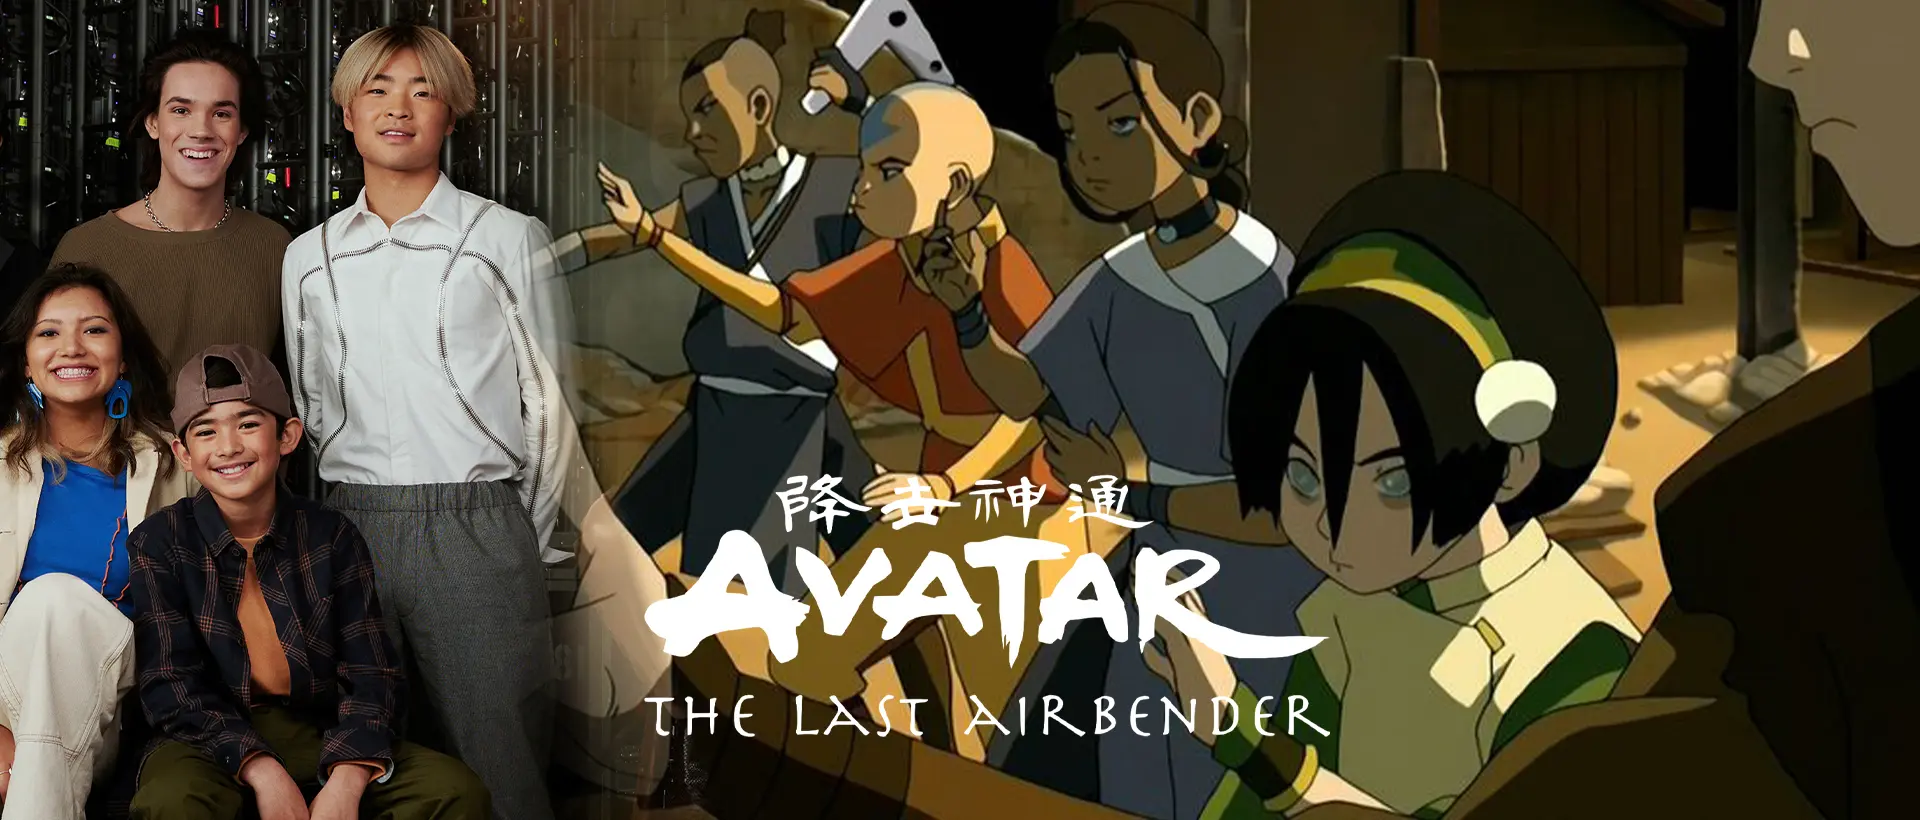 Tin vui cho các fan Avatar! Netflix đang cân nhắc sản xuất phần 4 của series Avatar Last Airbender. Với diễn xuất ấn tượng và hình ảnh hoành tráng, đây hứa hẹn sẽ là món ăn tinh thần không thể bỏ qua cho những ai yêu thích bộ phim. Nhấn vào hình ảnh để đón xem những thông tin mới nhất!